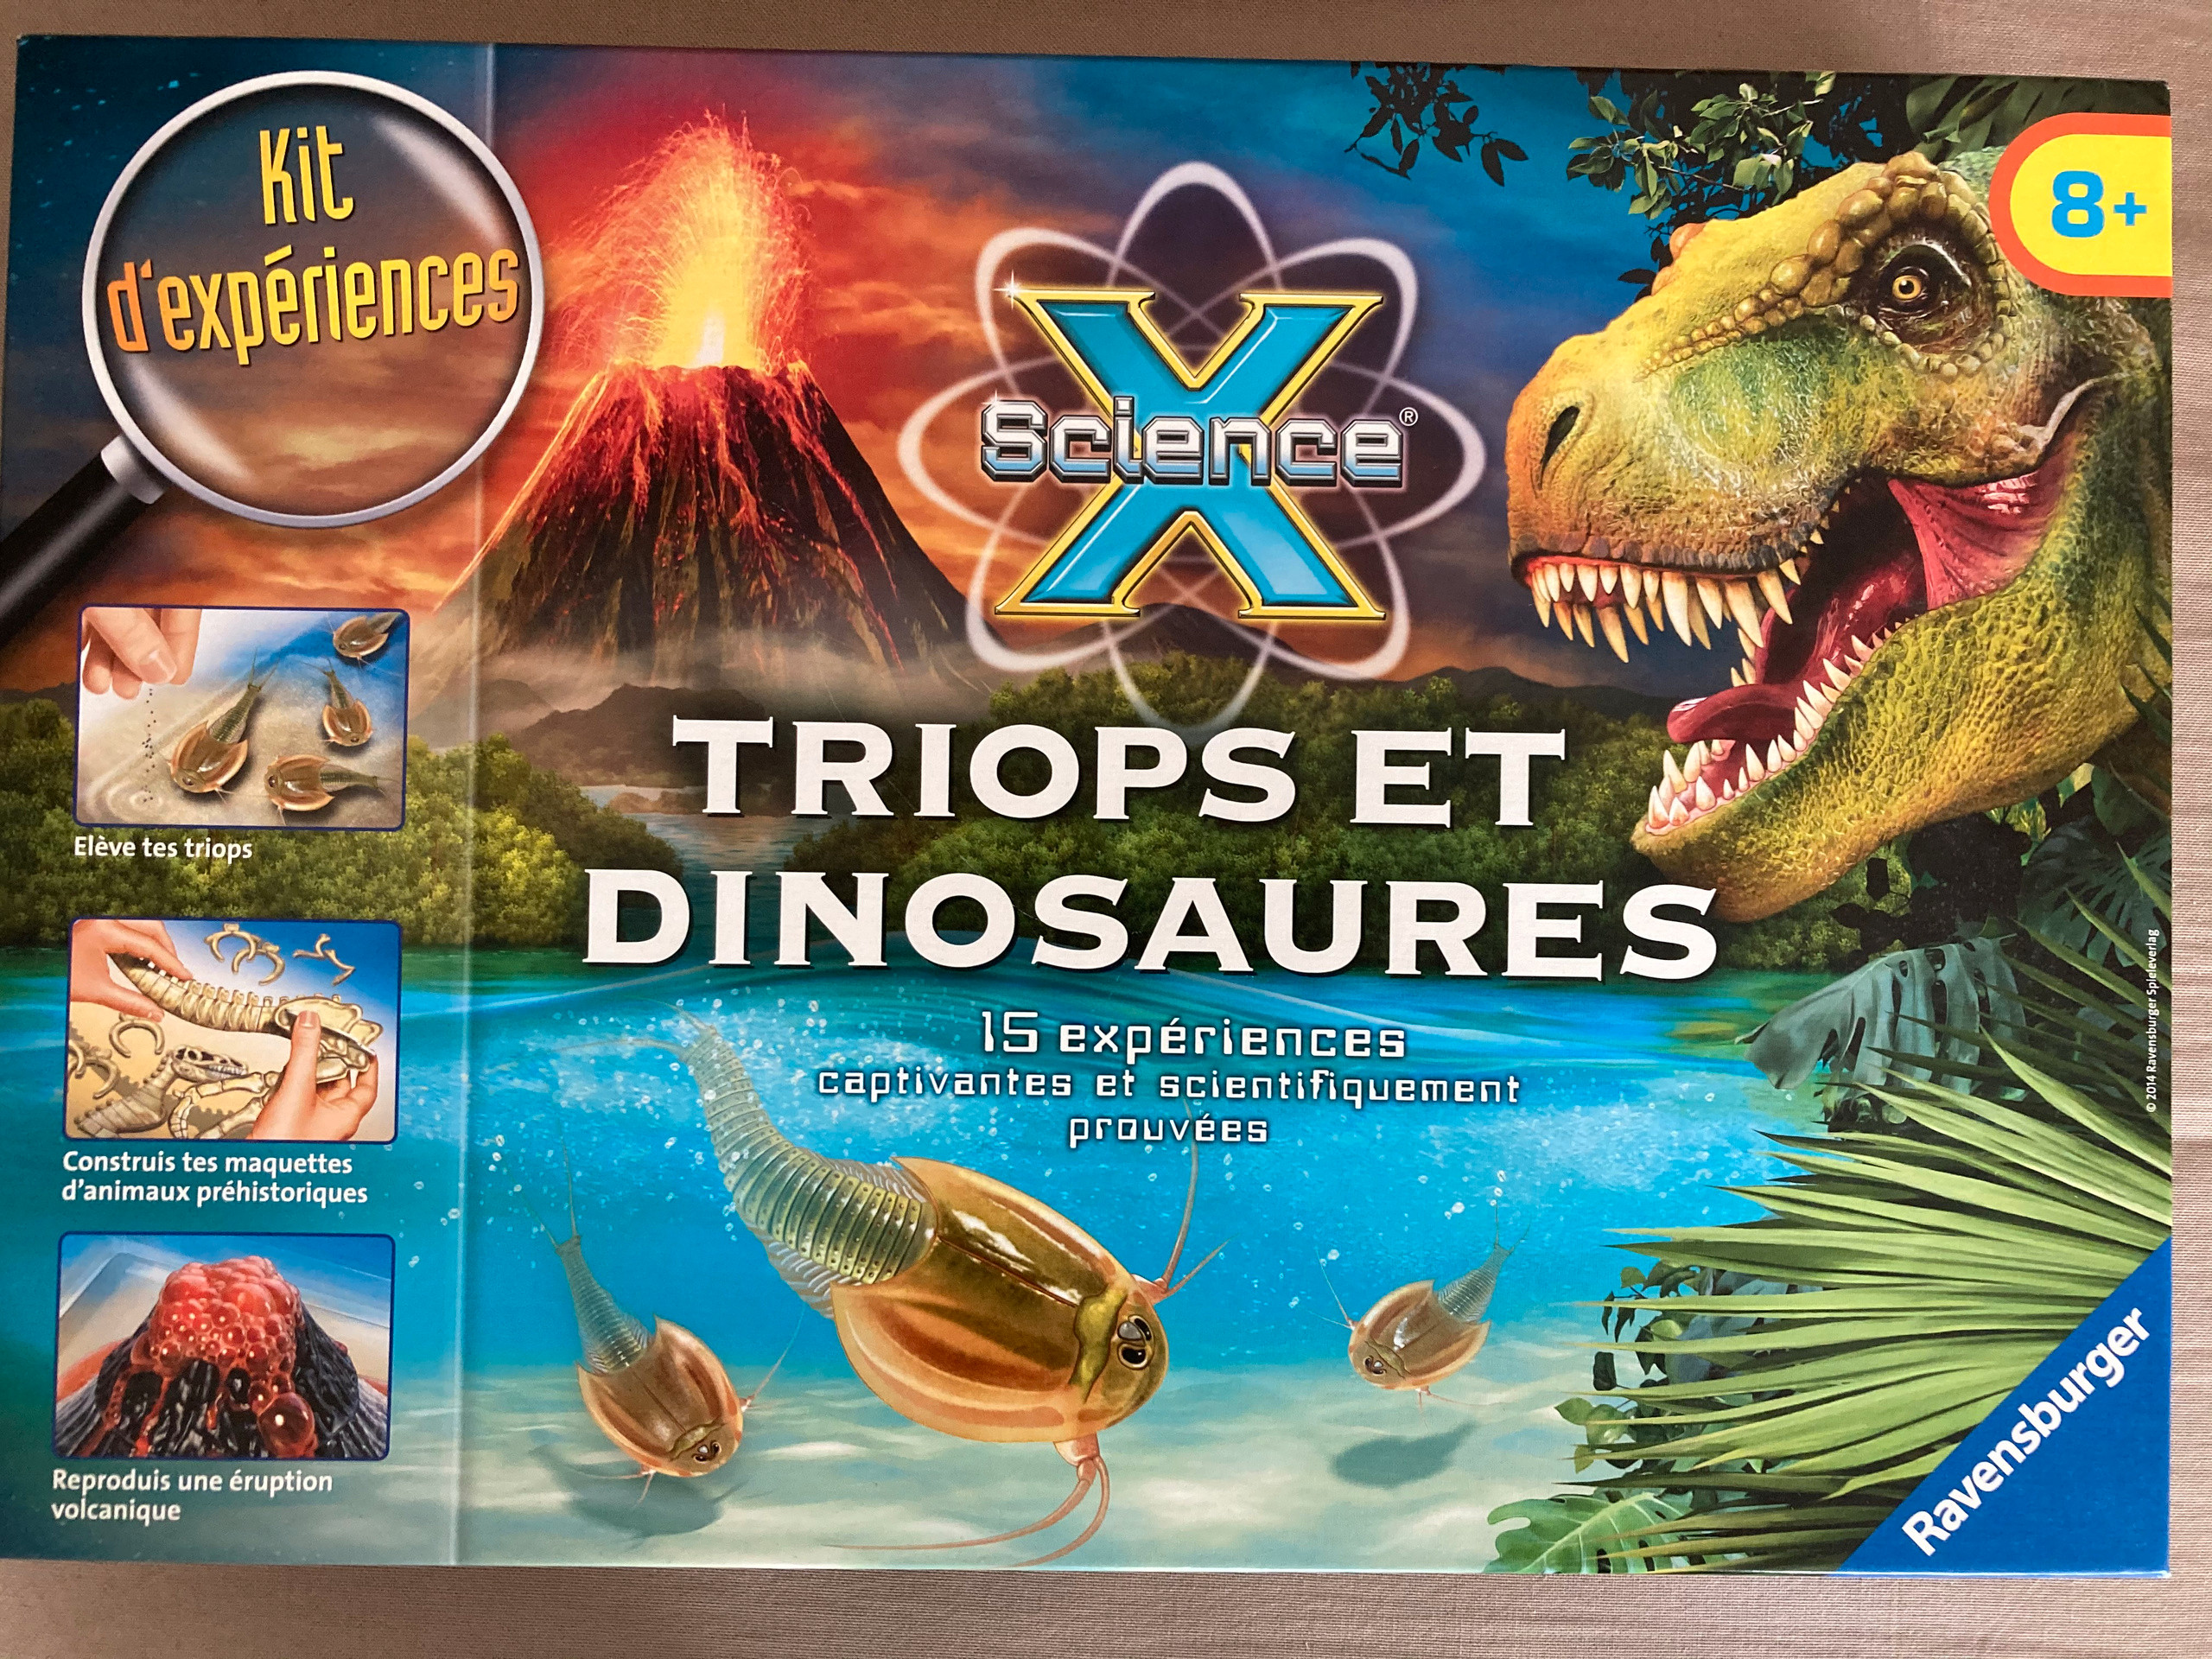 triops et le monde des dinosaures